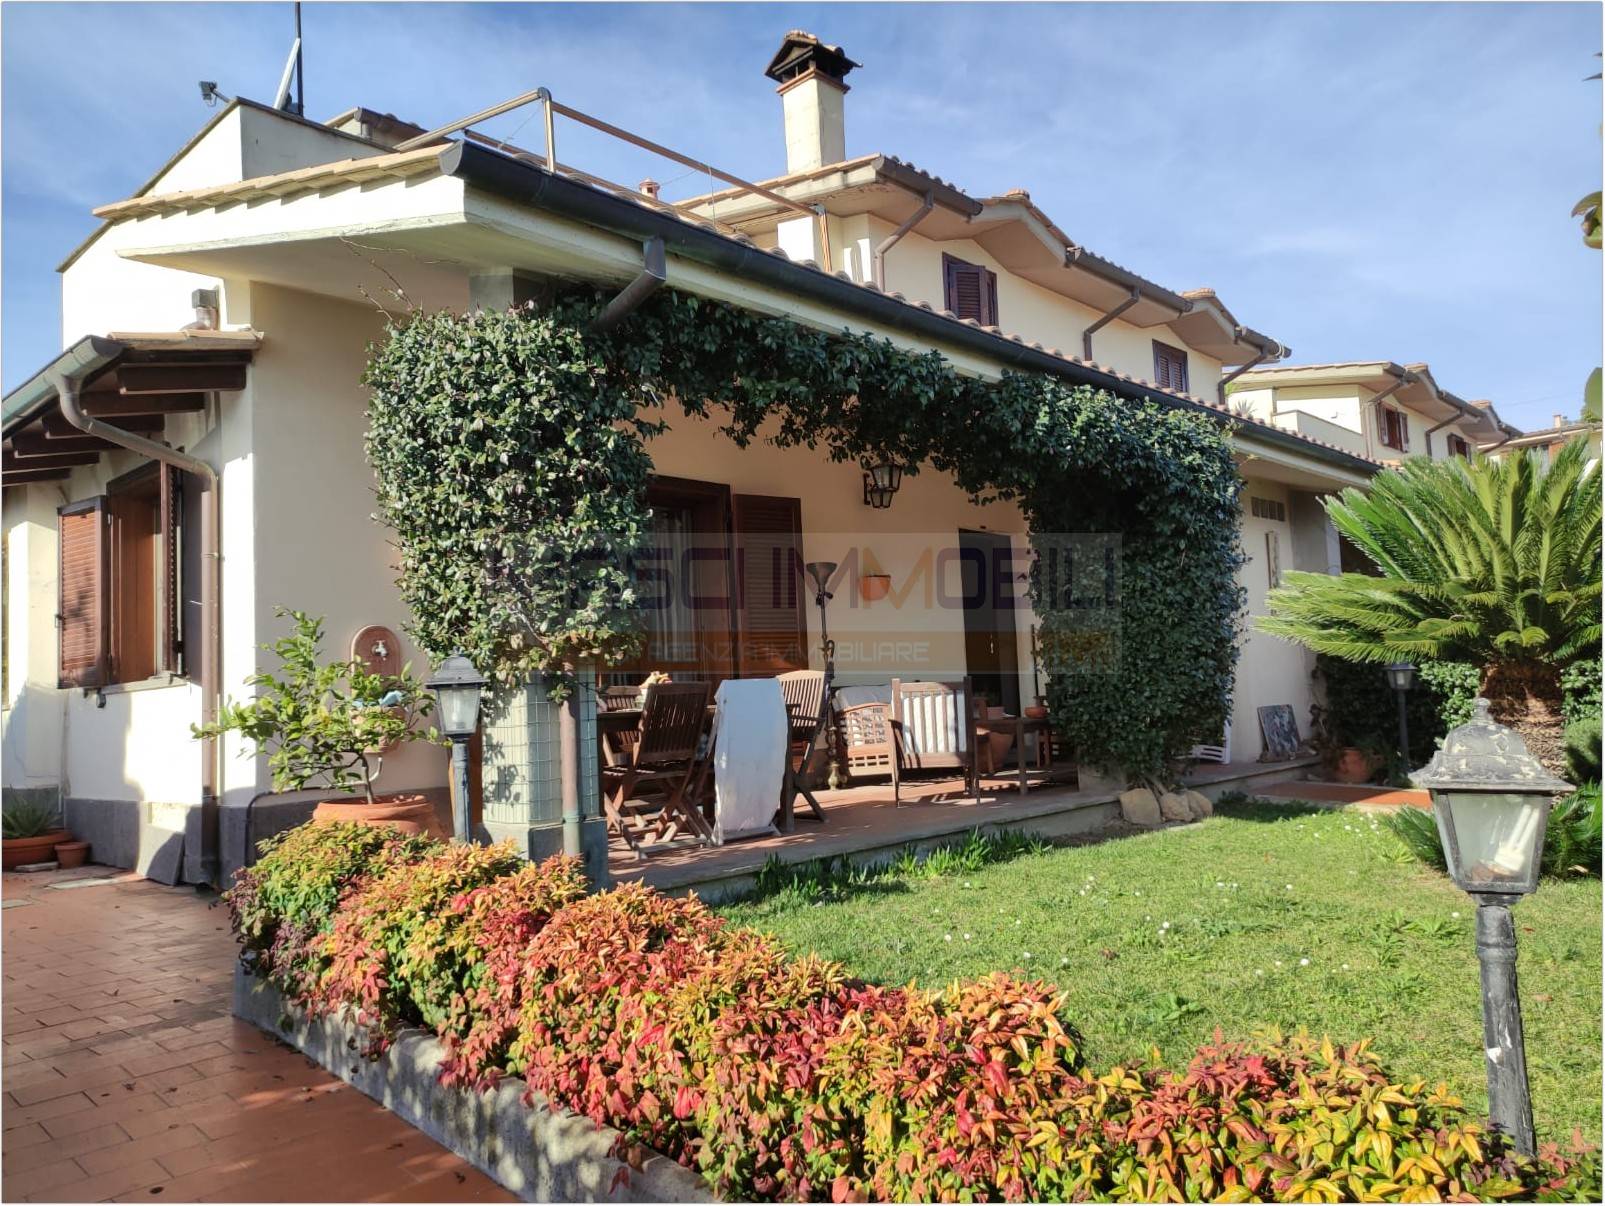 Villa Bifamiliare in vendita a Fiano Romano, 4 locali, prezzo € 249.000 | CambioCasa.it